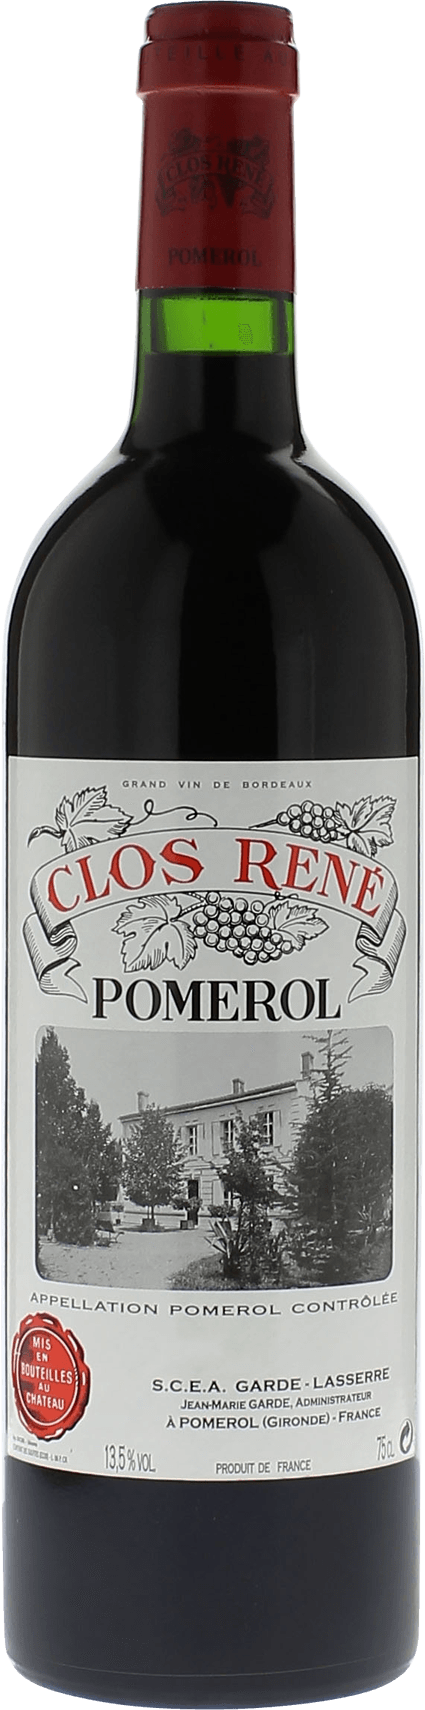 Clos rene 2009  Pomerol, Bordeaux rouge